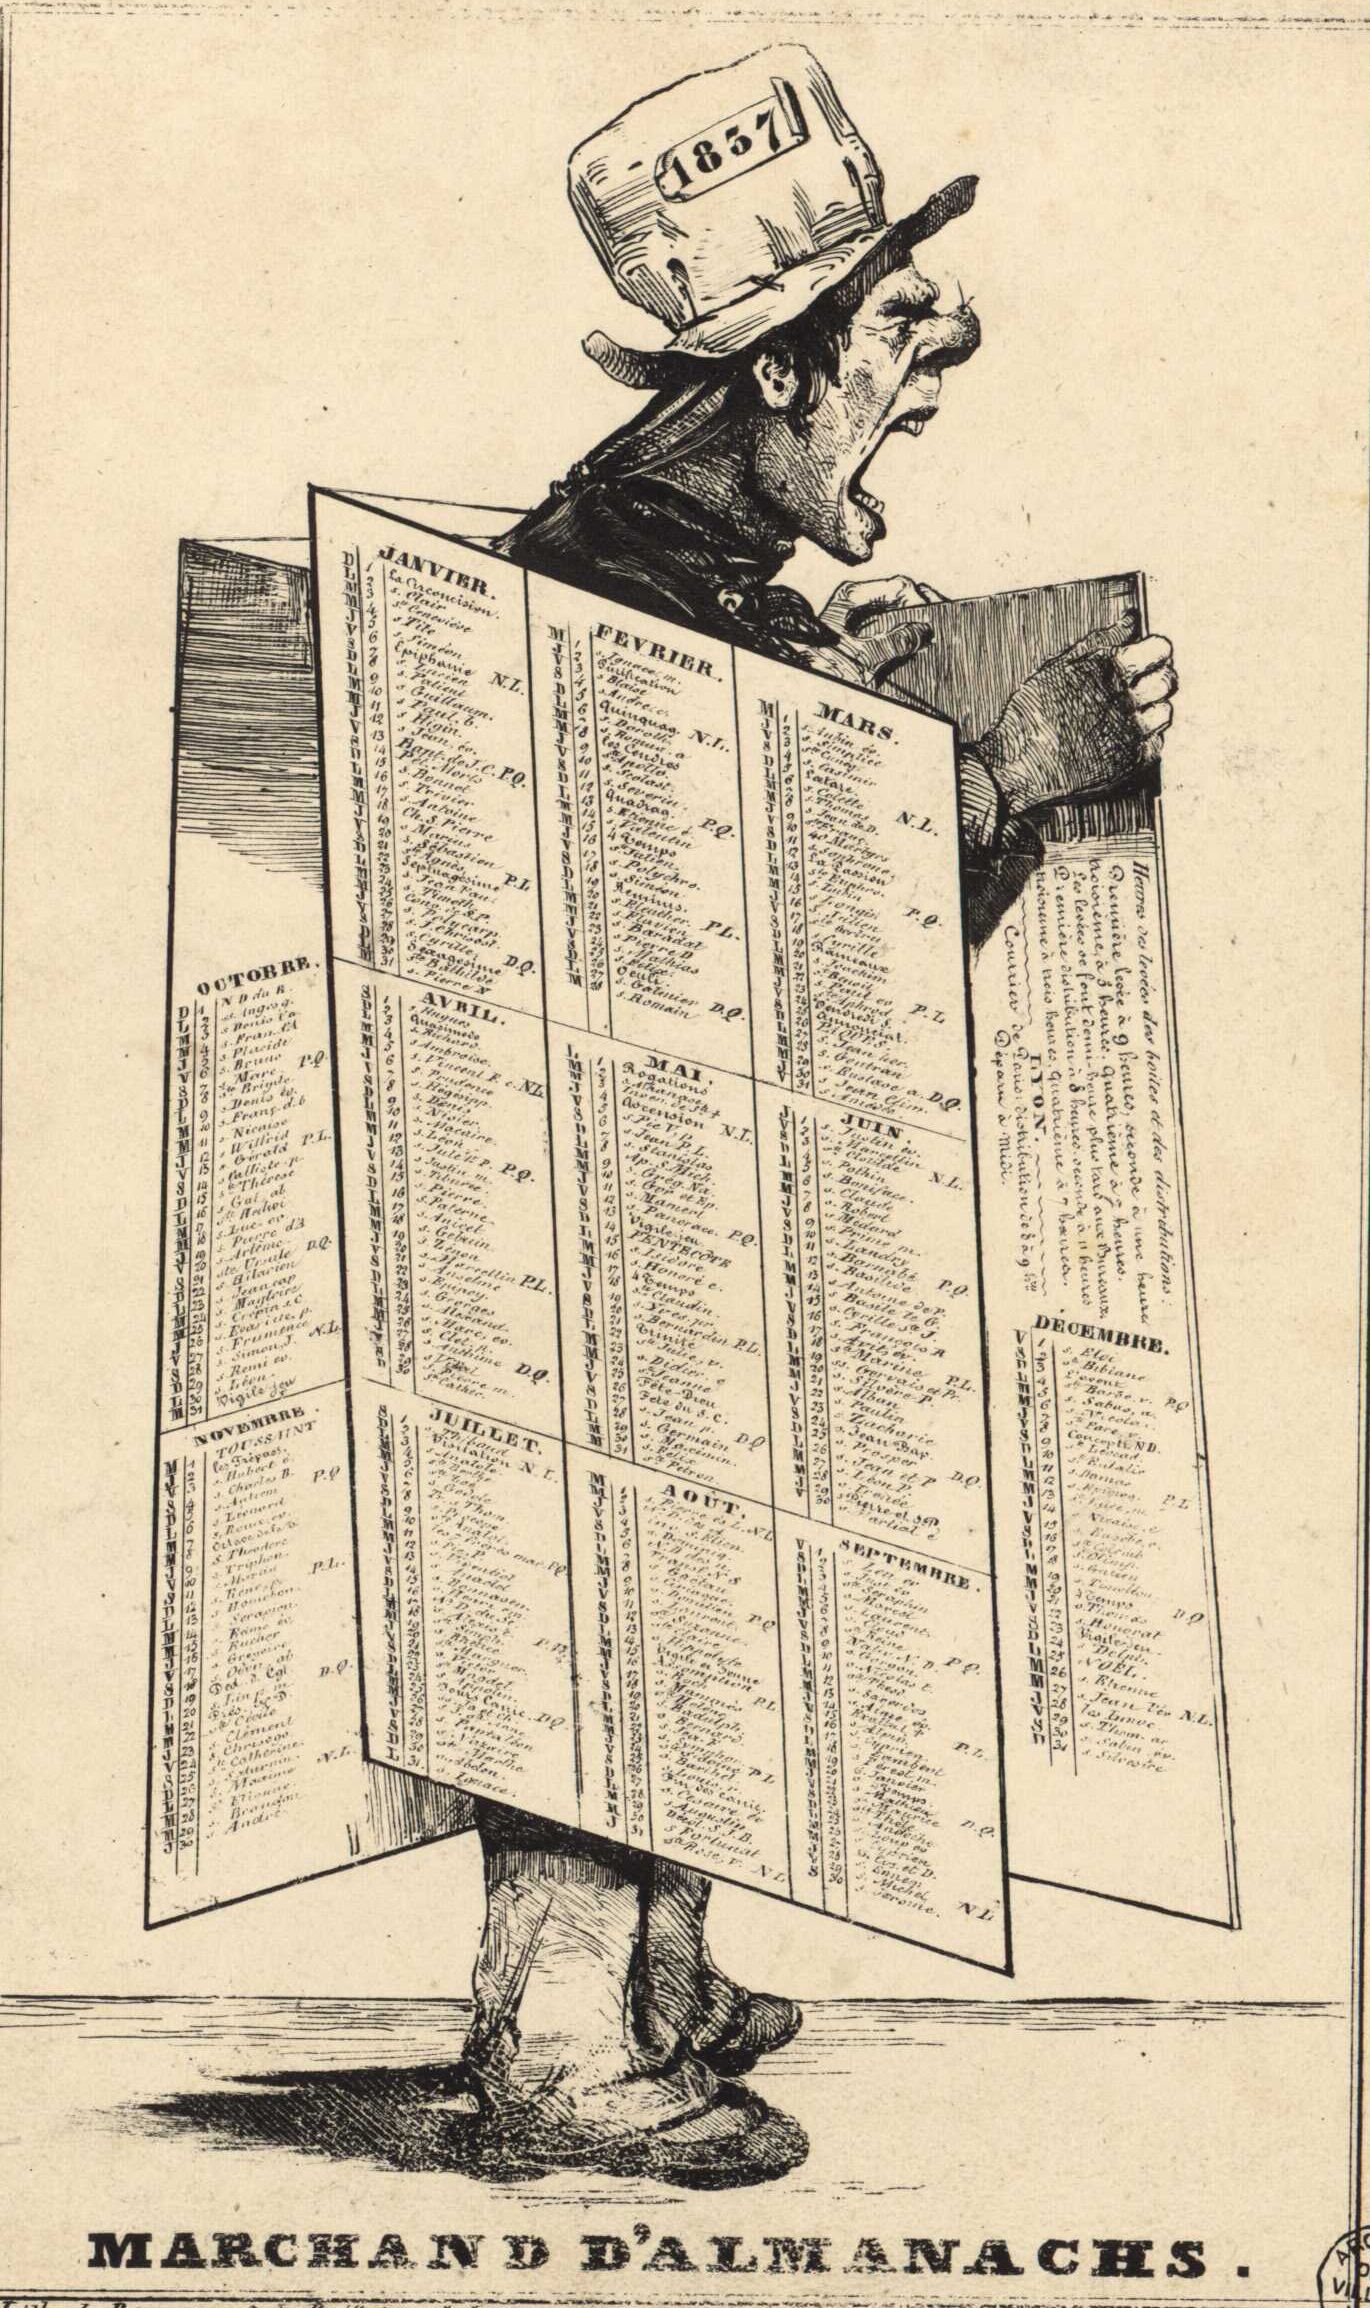 Calendrier de l'année 1837 présenté sous la forme d'une caricature d'un marchand d'almanachs : lithographie NB par Roux (1837, cote : 16FI/607)